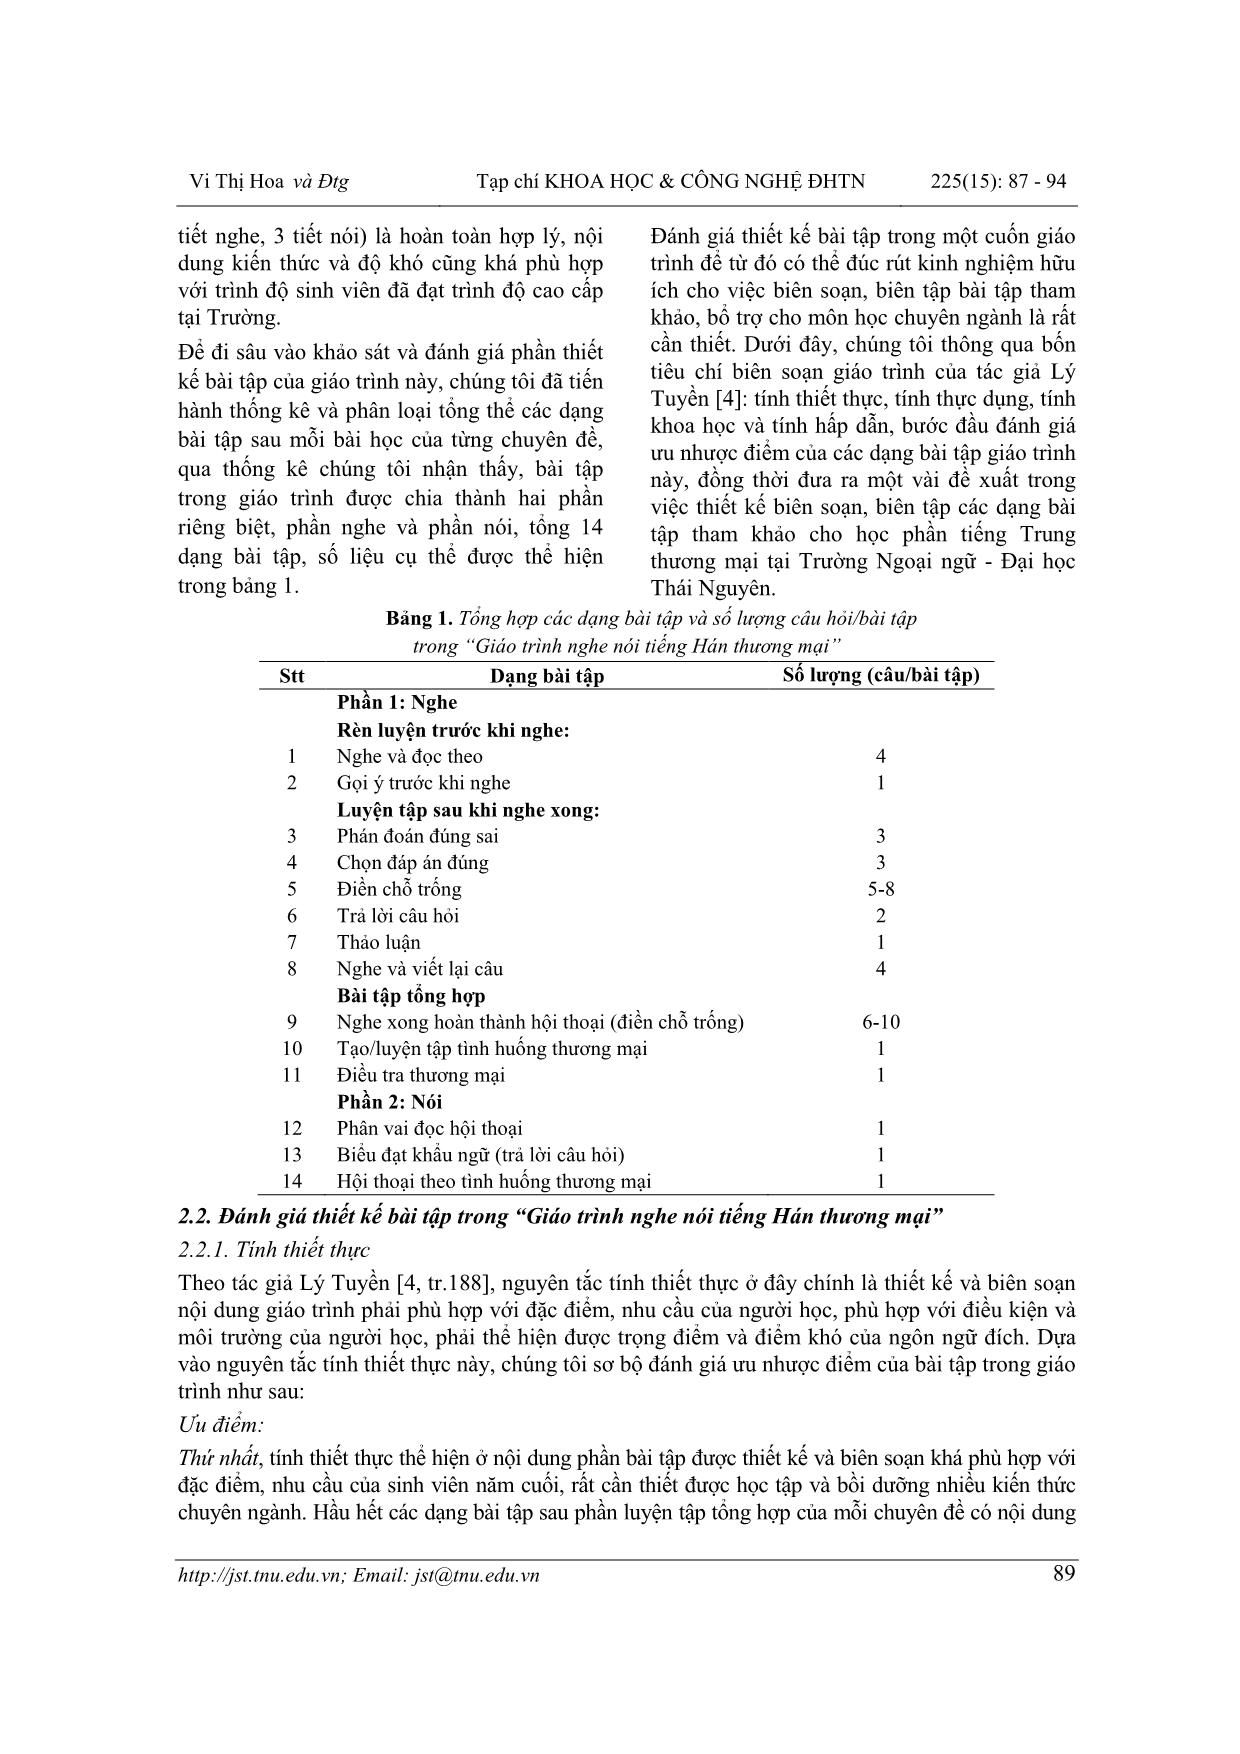 Khảo sát thiết kế bài tập trong giáo trình Tiếng Hán thương mại tại trường Ngoại ngữ - Đại học Thái Nguyên (Khảo sát “Giáo trình nghe nói tiếng Hán thương mại”) trang 3